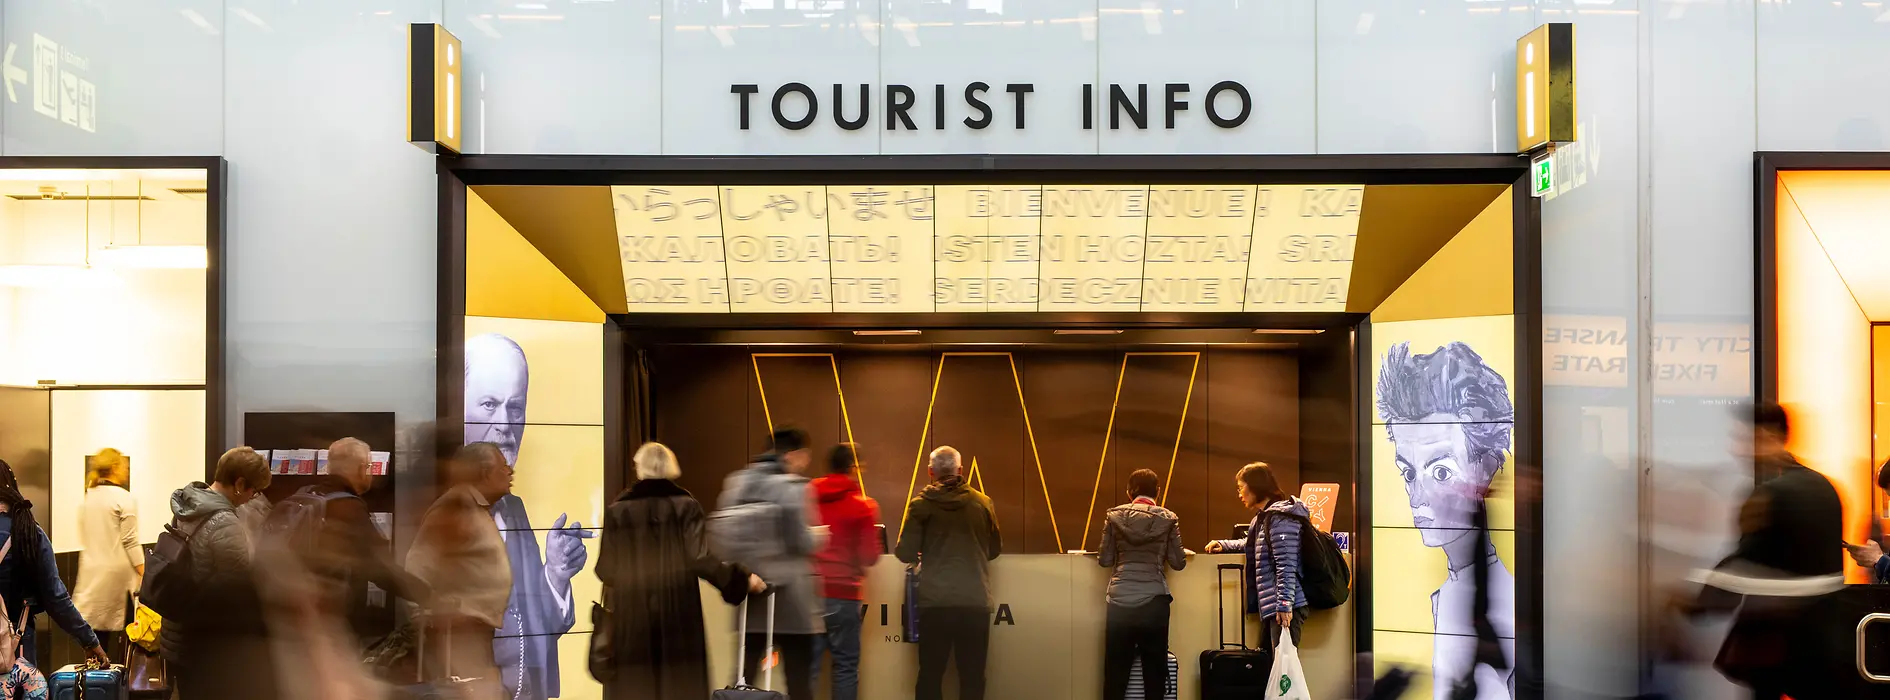 Tourist-Info, Punto de bienvenida en el aeropuerto de Viena, viajeros